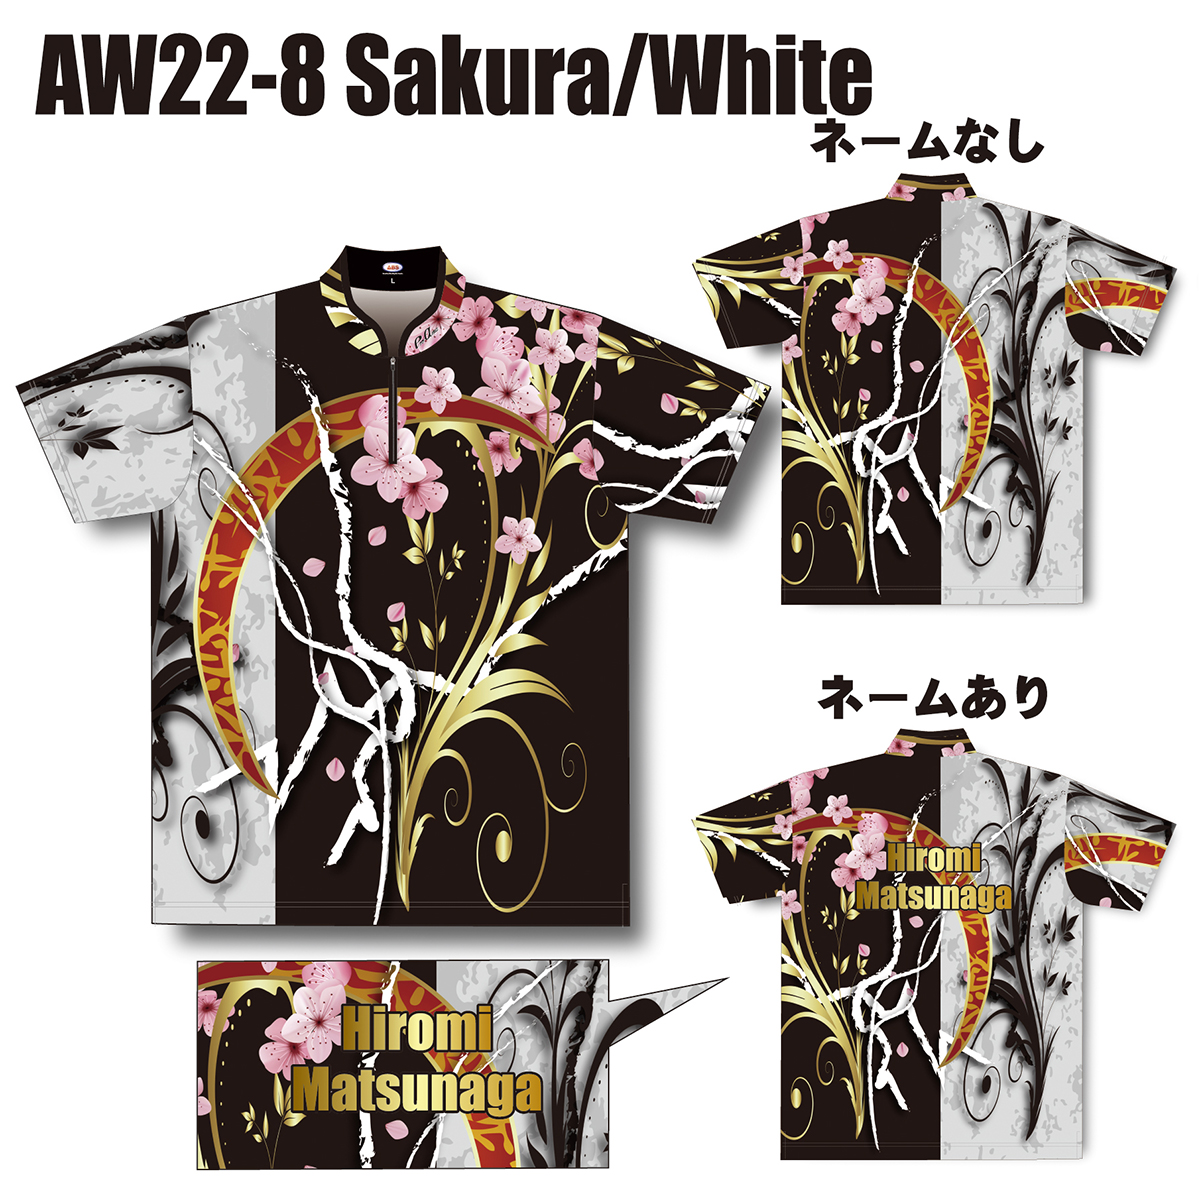 2022スプリングモデル(AW22-8 Sakura/White)